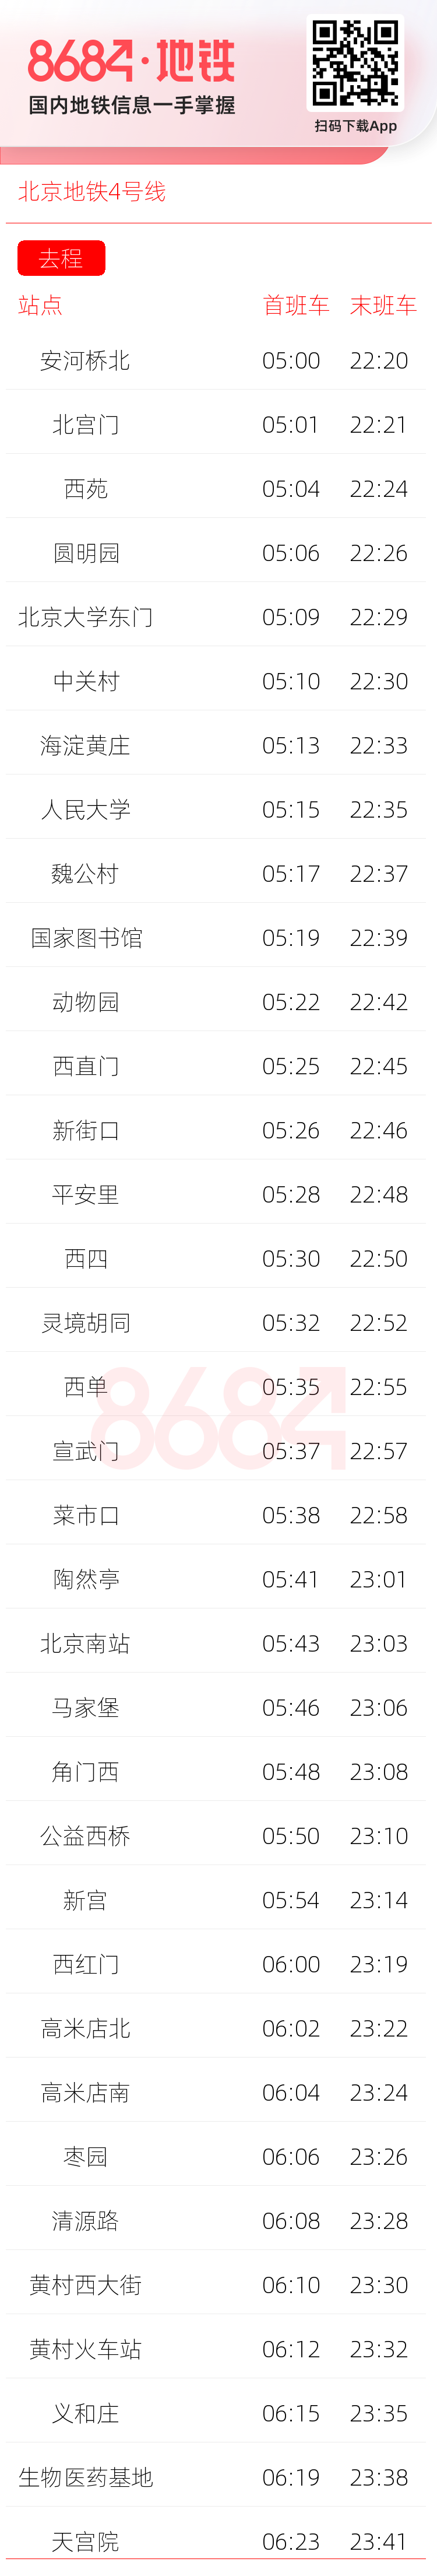 北京地铁4号线运营时间表